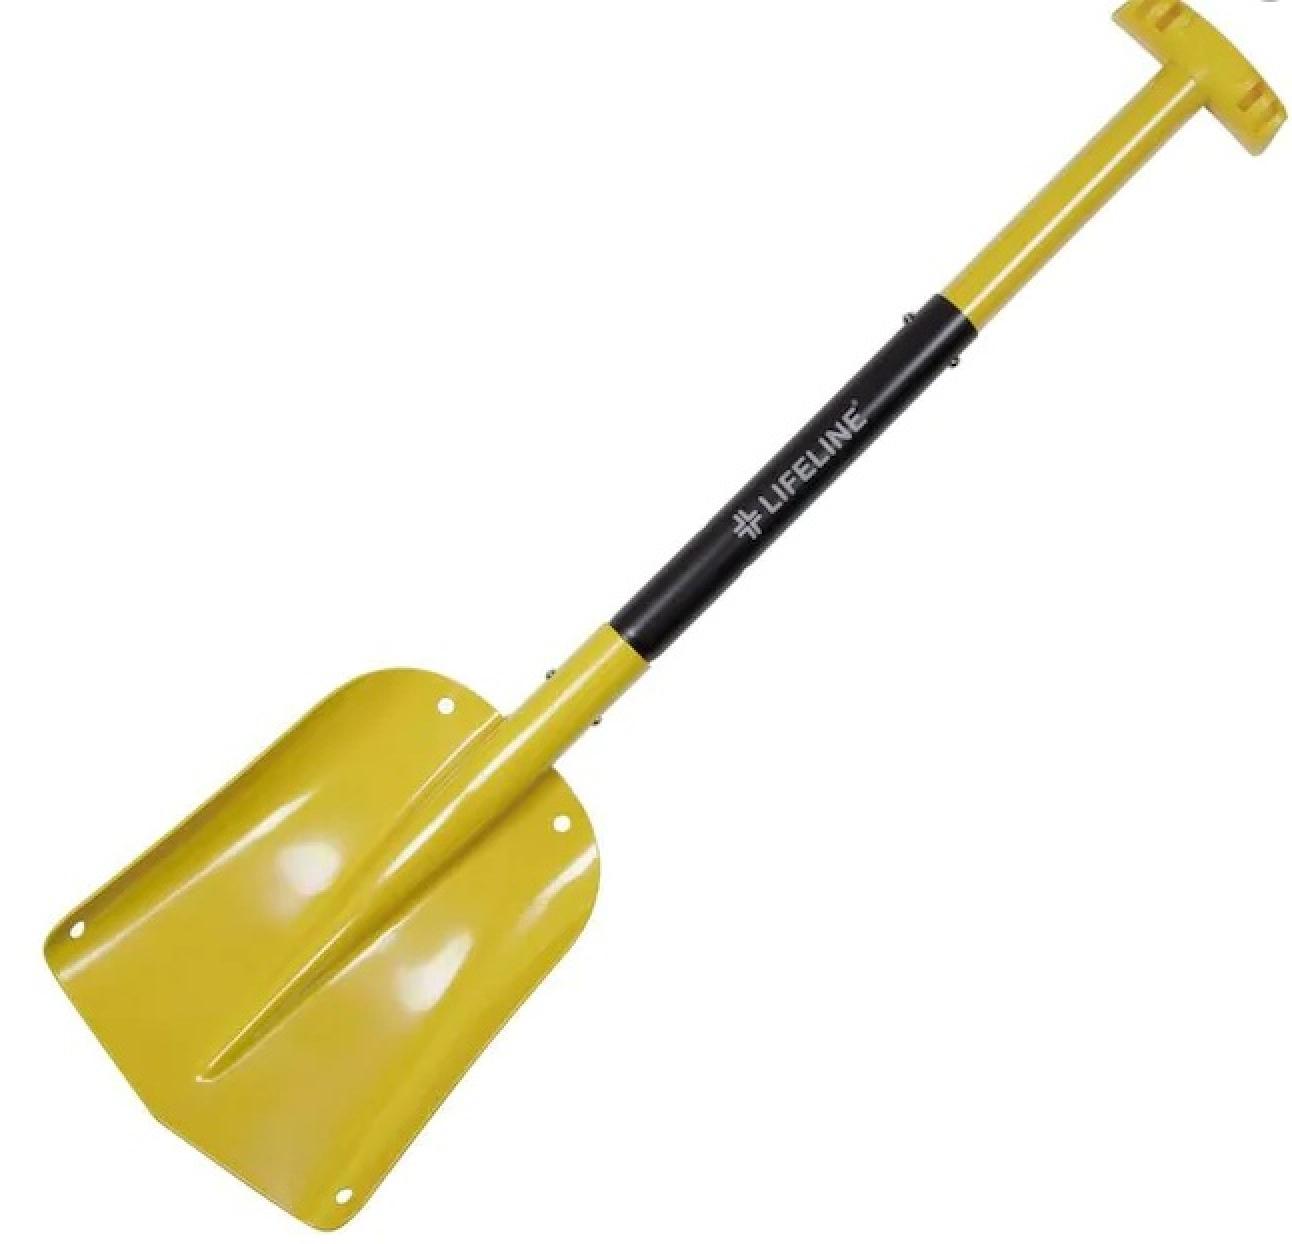 Lifeline Aluminum Utility Shovel - Yellow